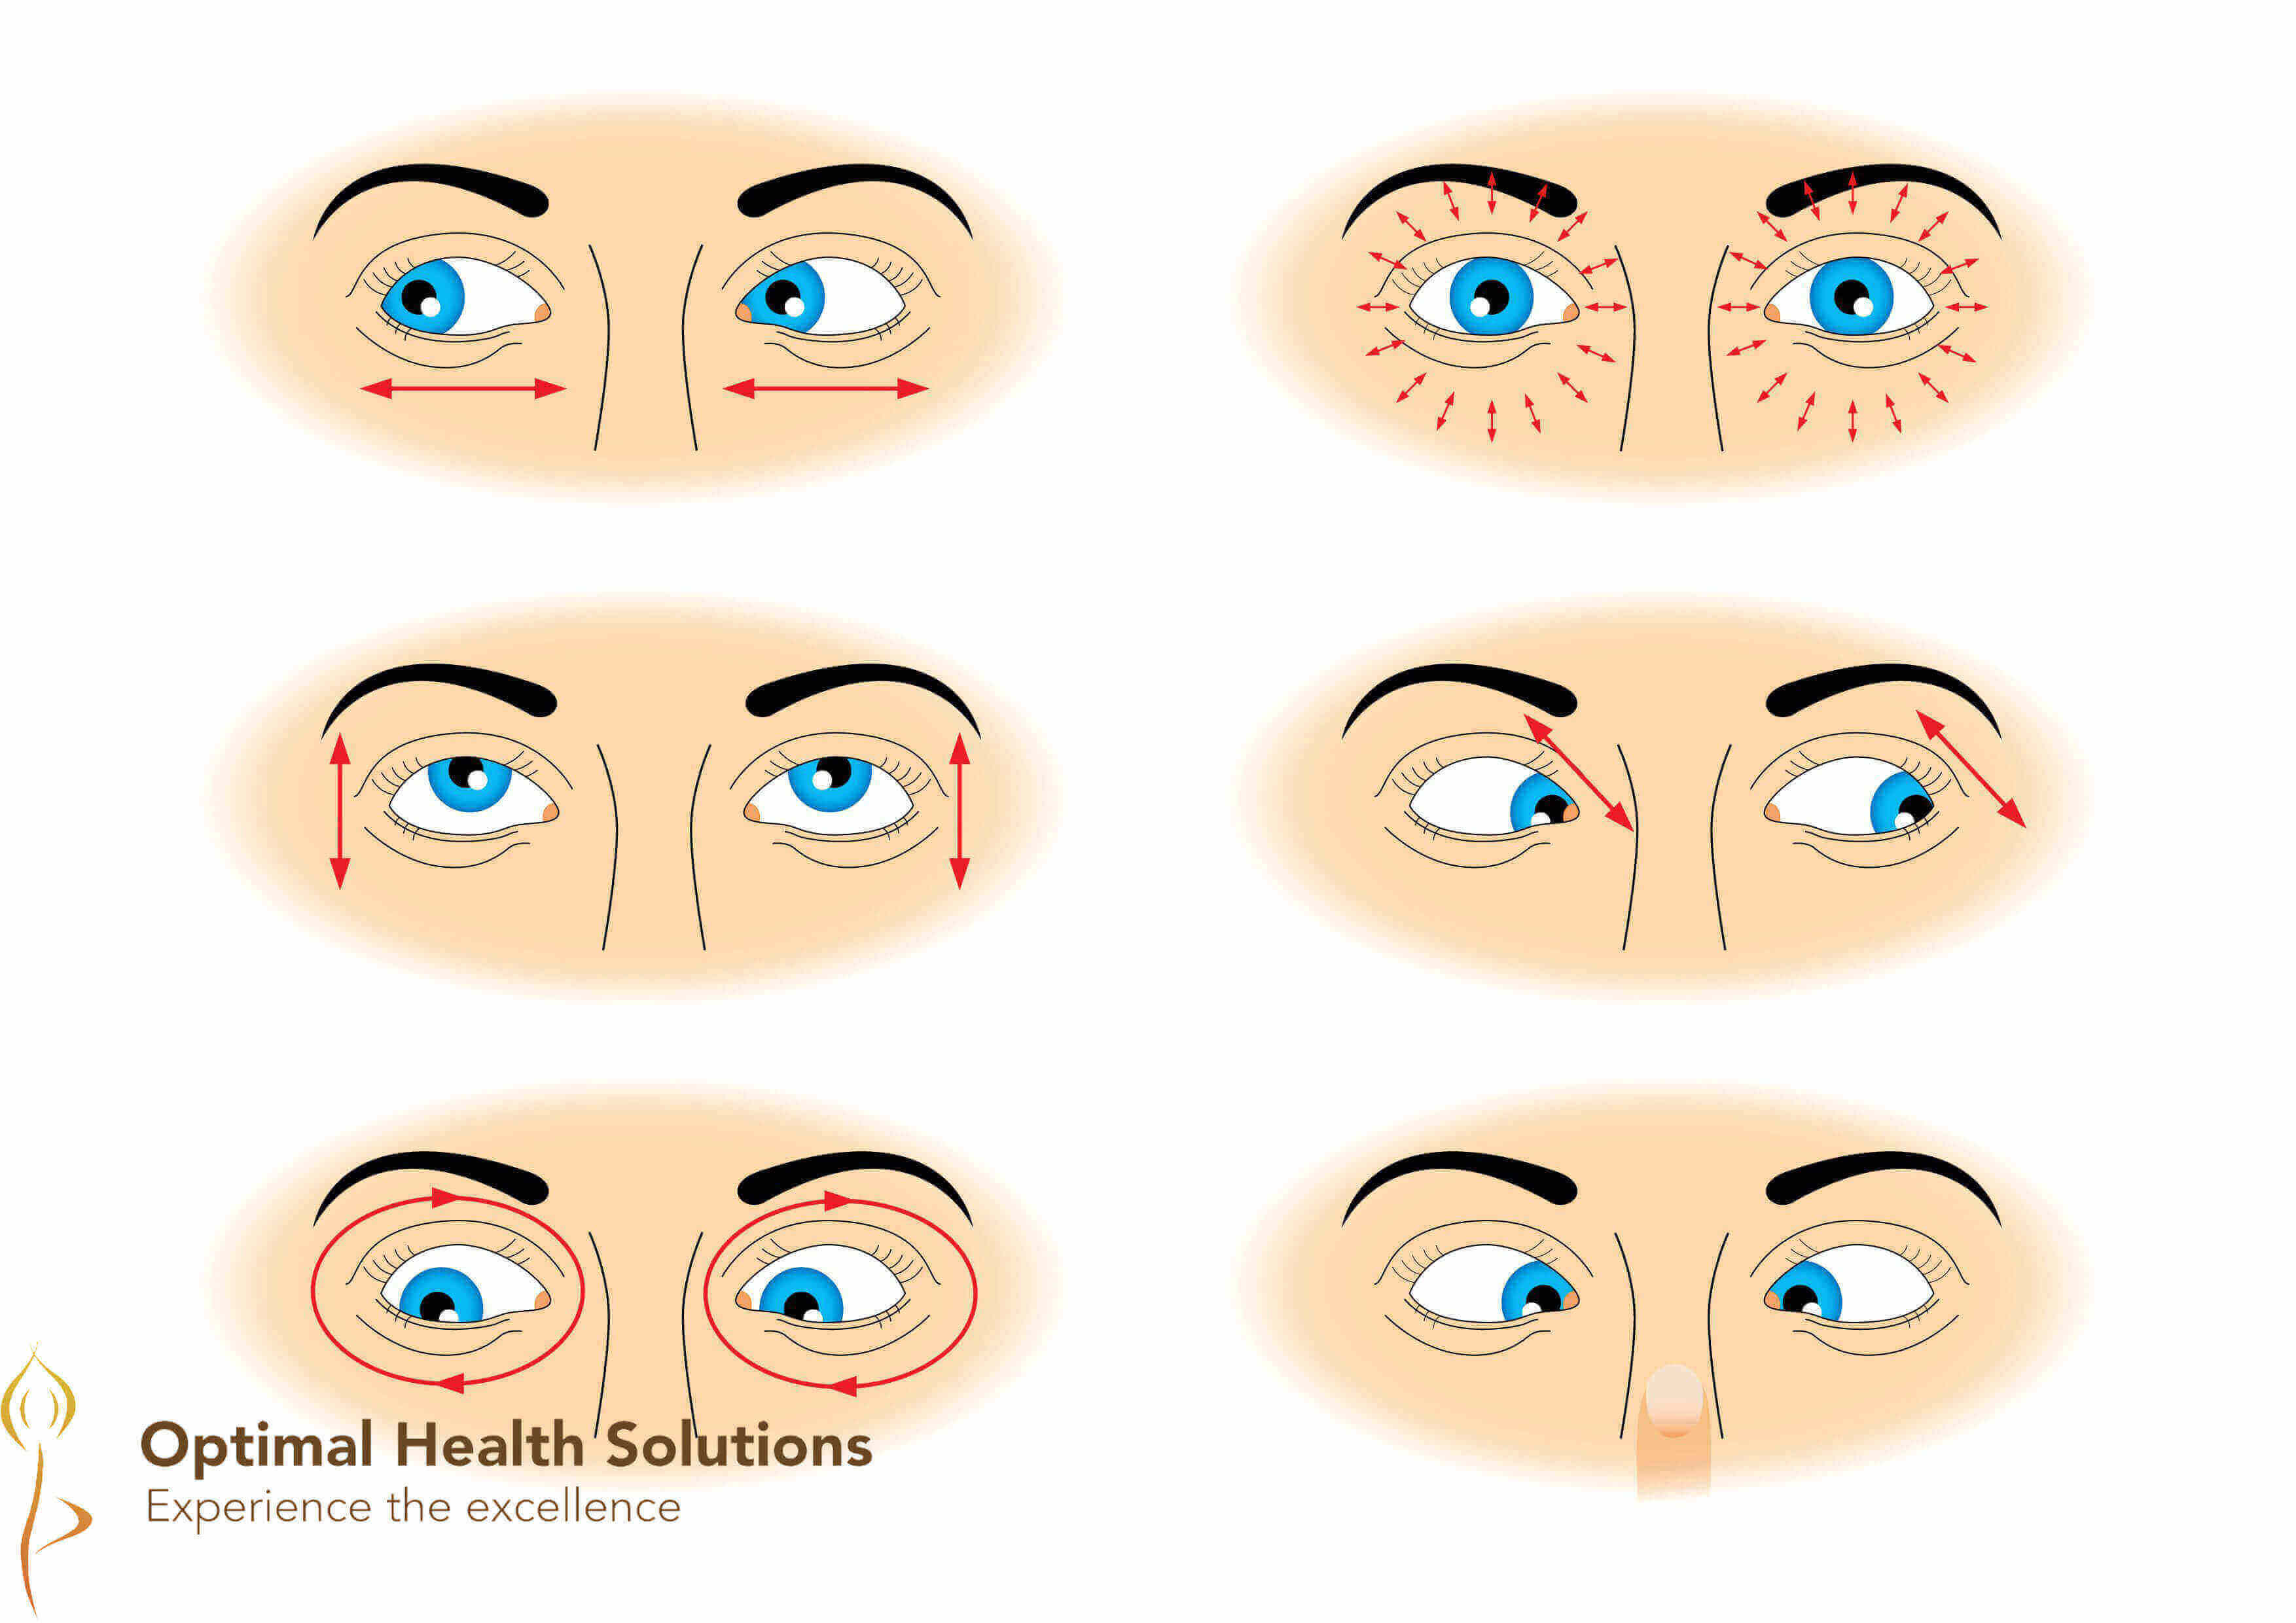 Eye Exercises